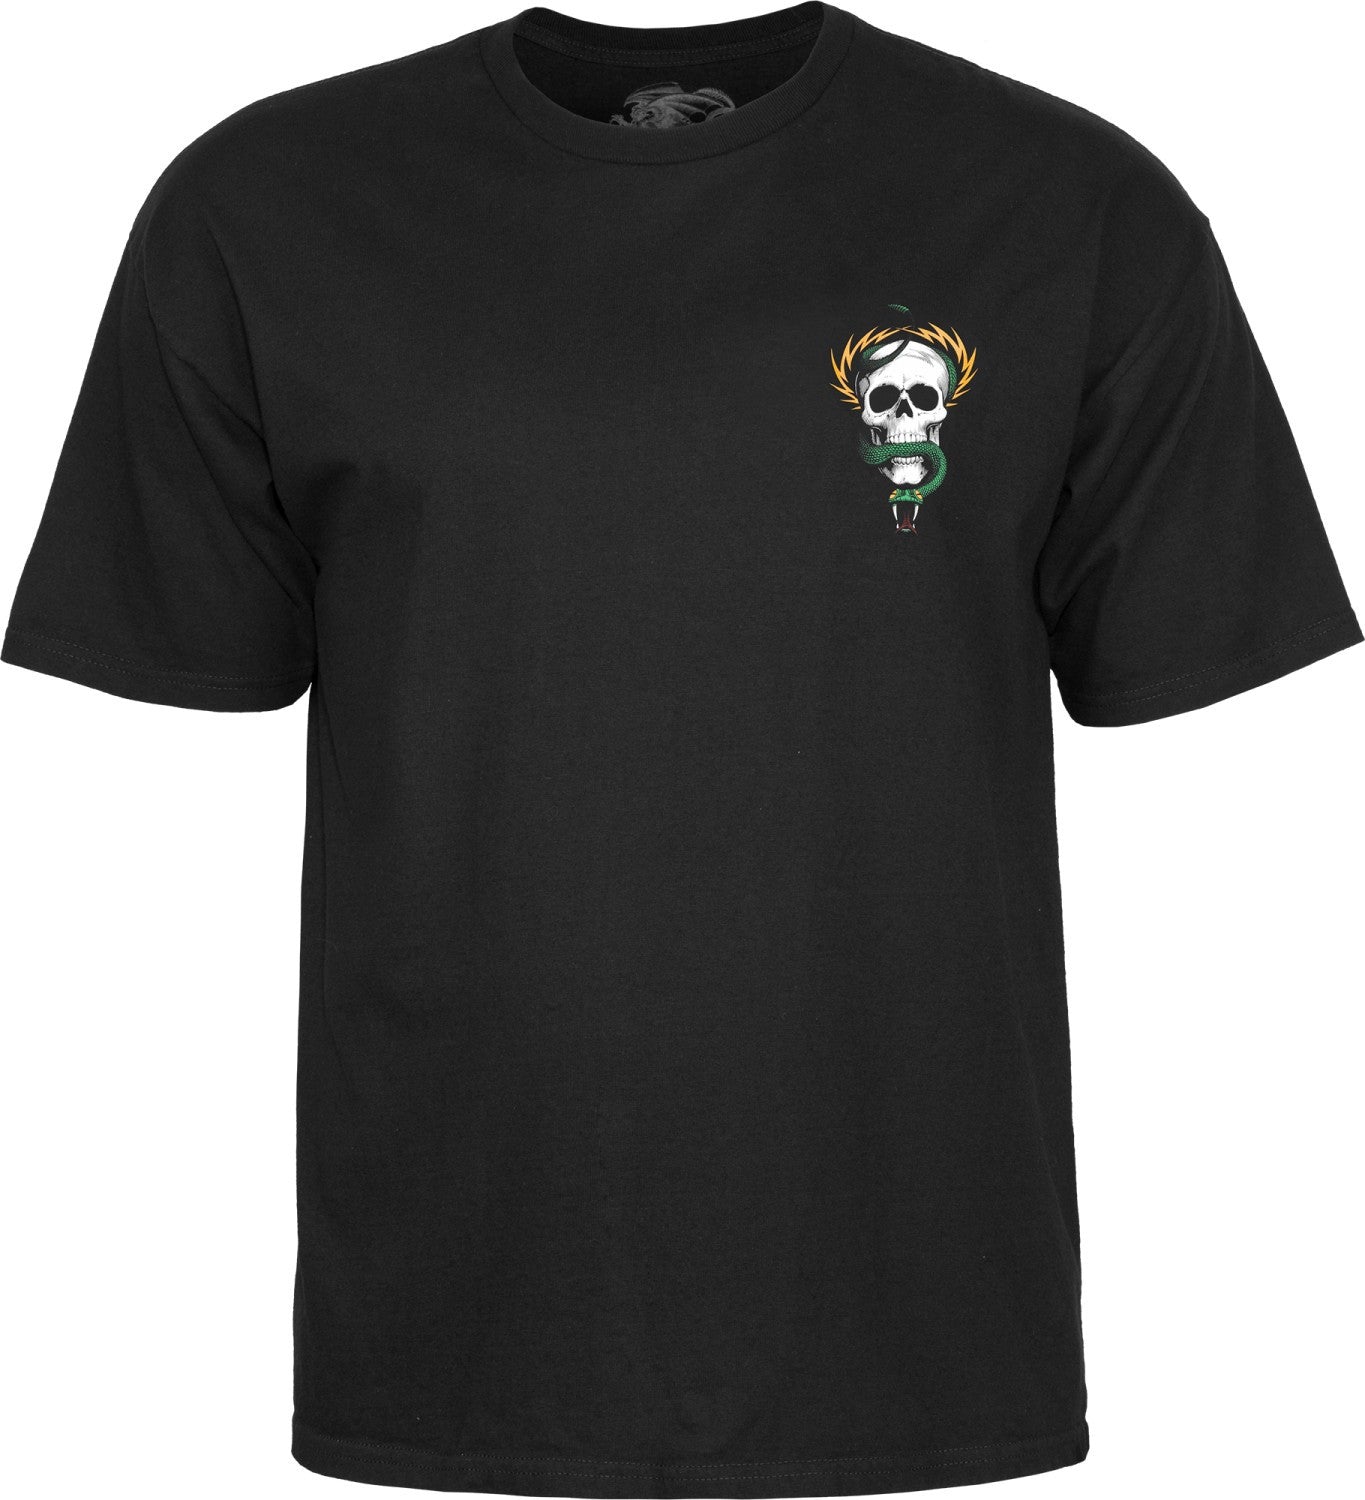 Powell Peralta Mike McGill Skull & Snake T-shirt - The Dark Slide